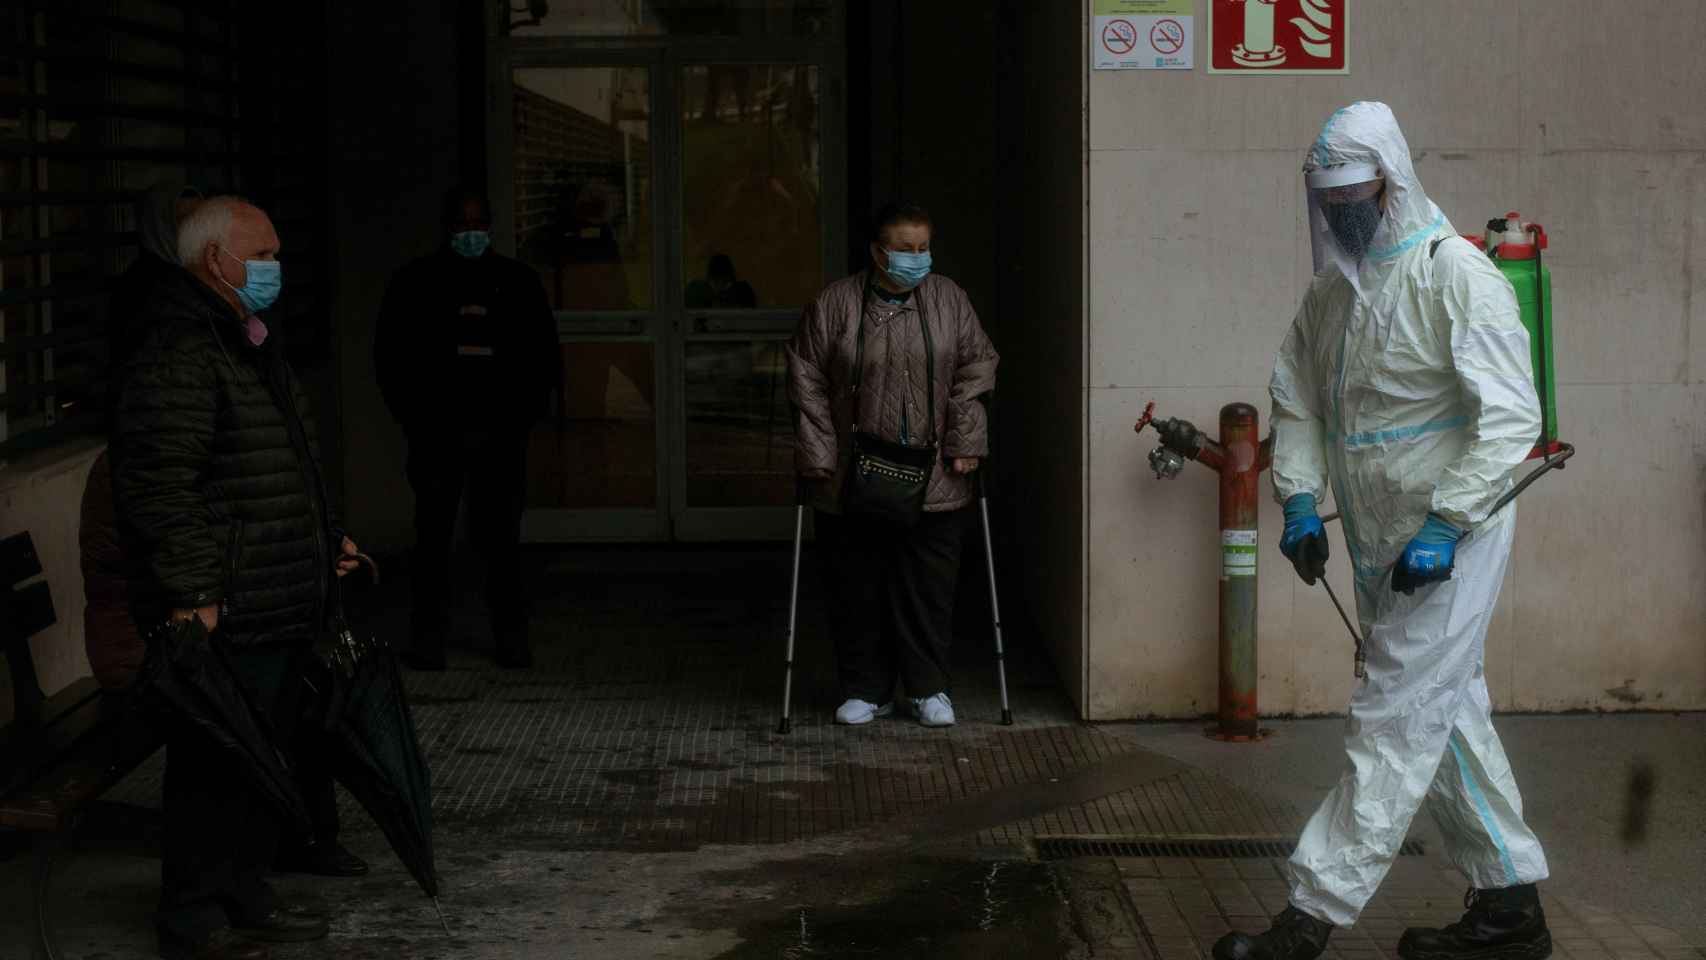 Un empleado municipal desinfecta el acceso al Complejo Hospitalario Universitario de Ourense (CHUO).